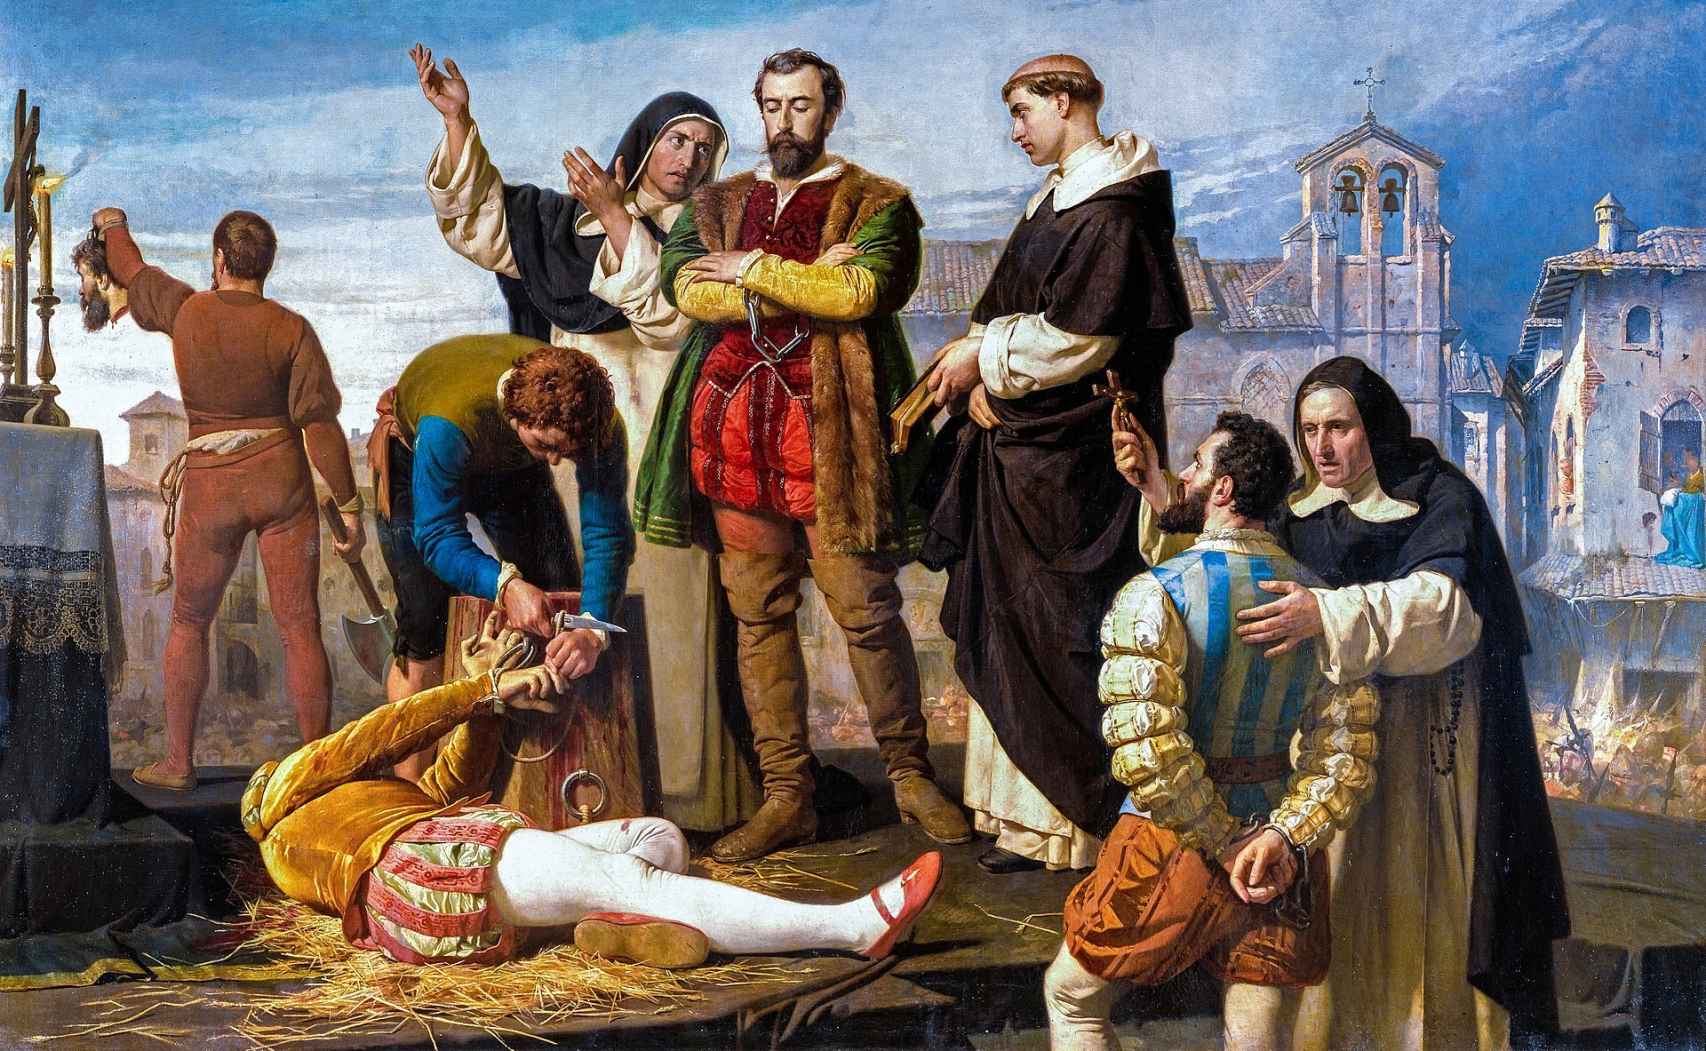 La ejecución de los comuneros Juan de Padilla, Juan Bravo y Francisco Maldonado, que se llevó a cabo en Villalar el día 24 de abril de 1521.